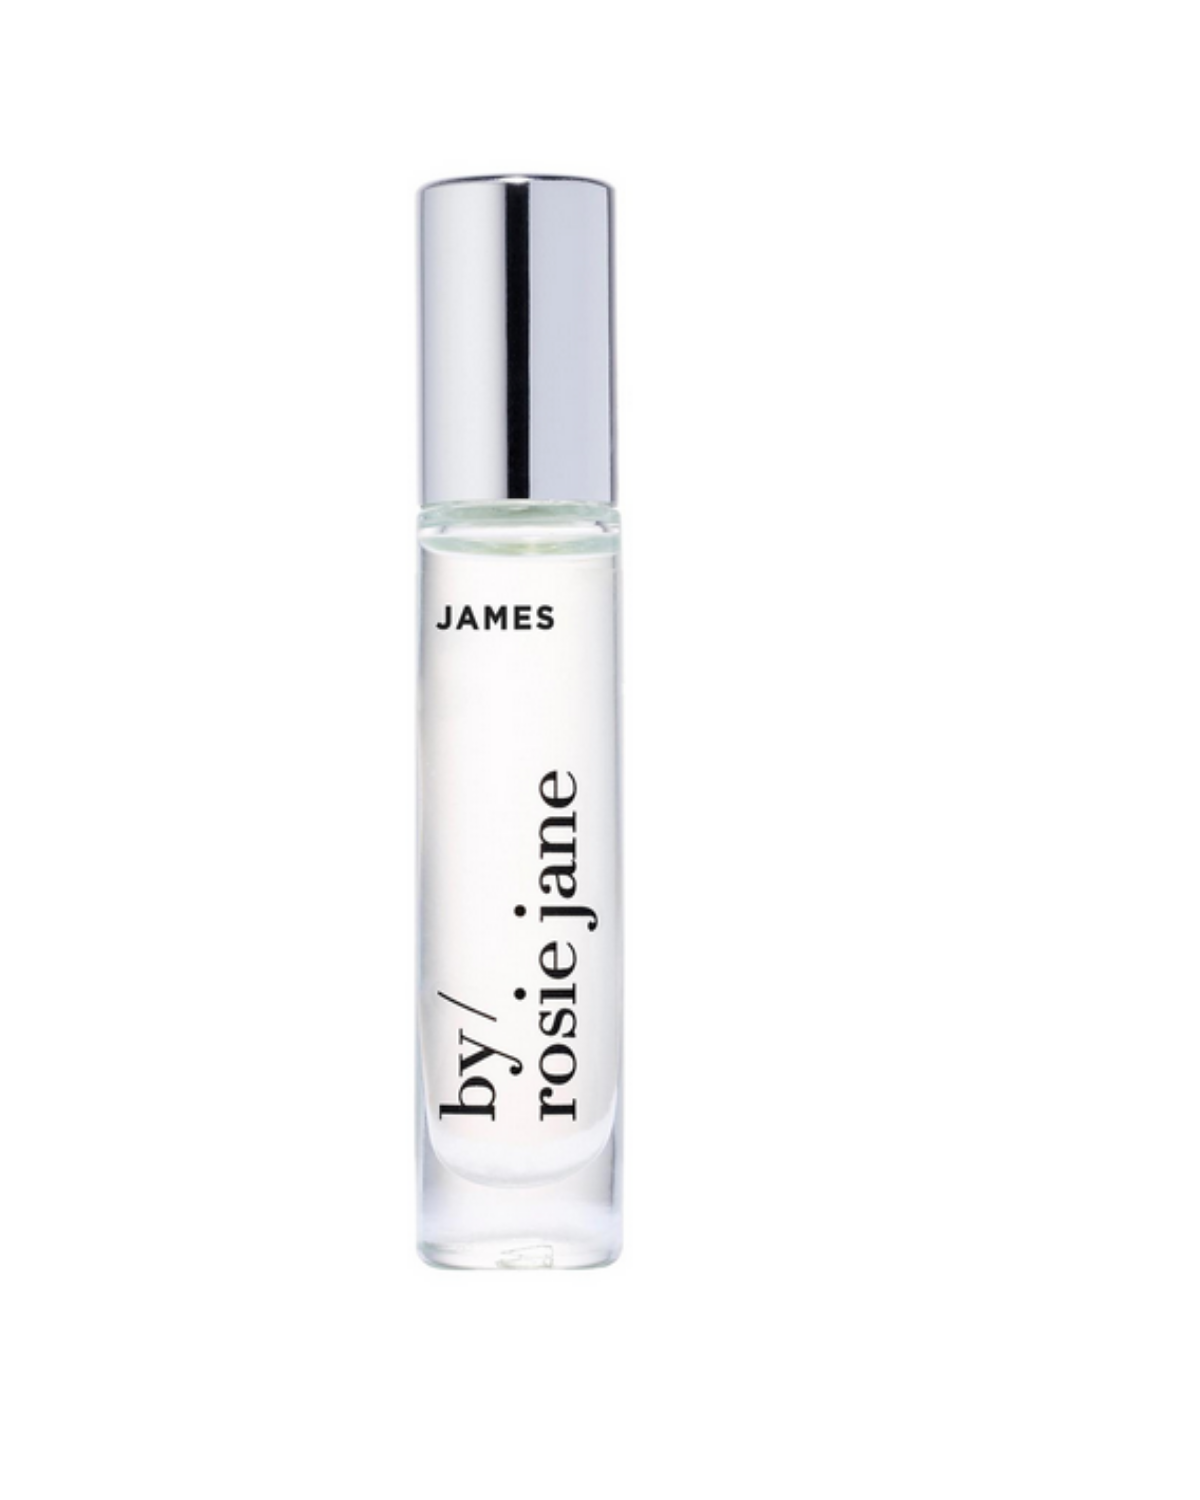 James Perfume Oil by Rosie Jane